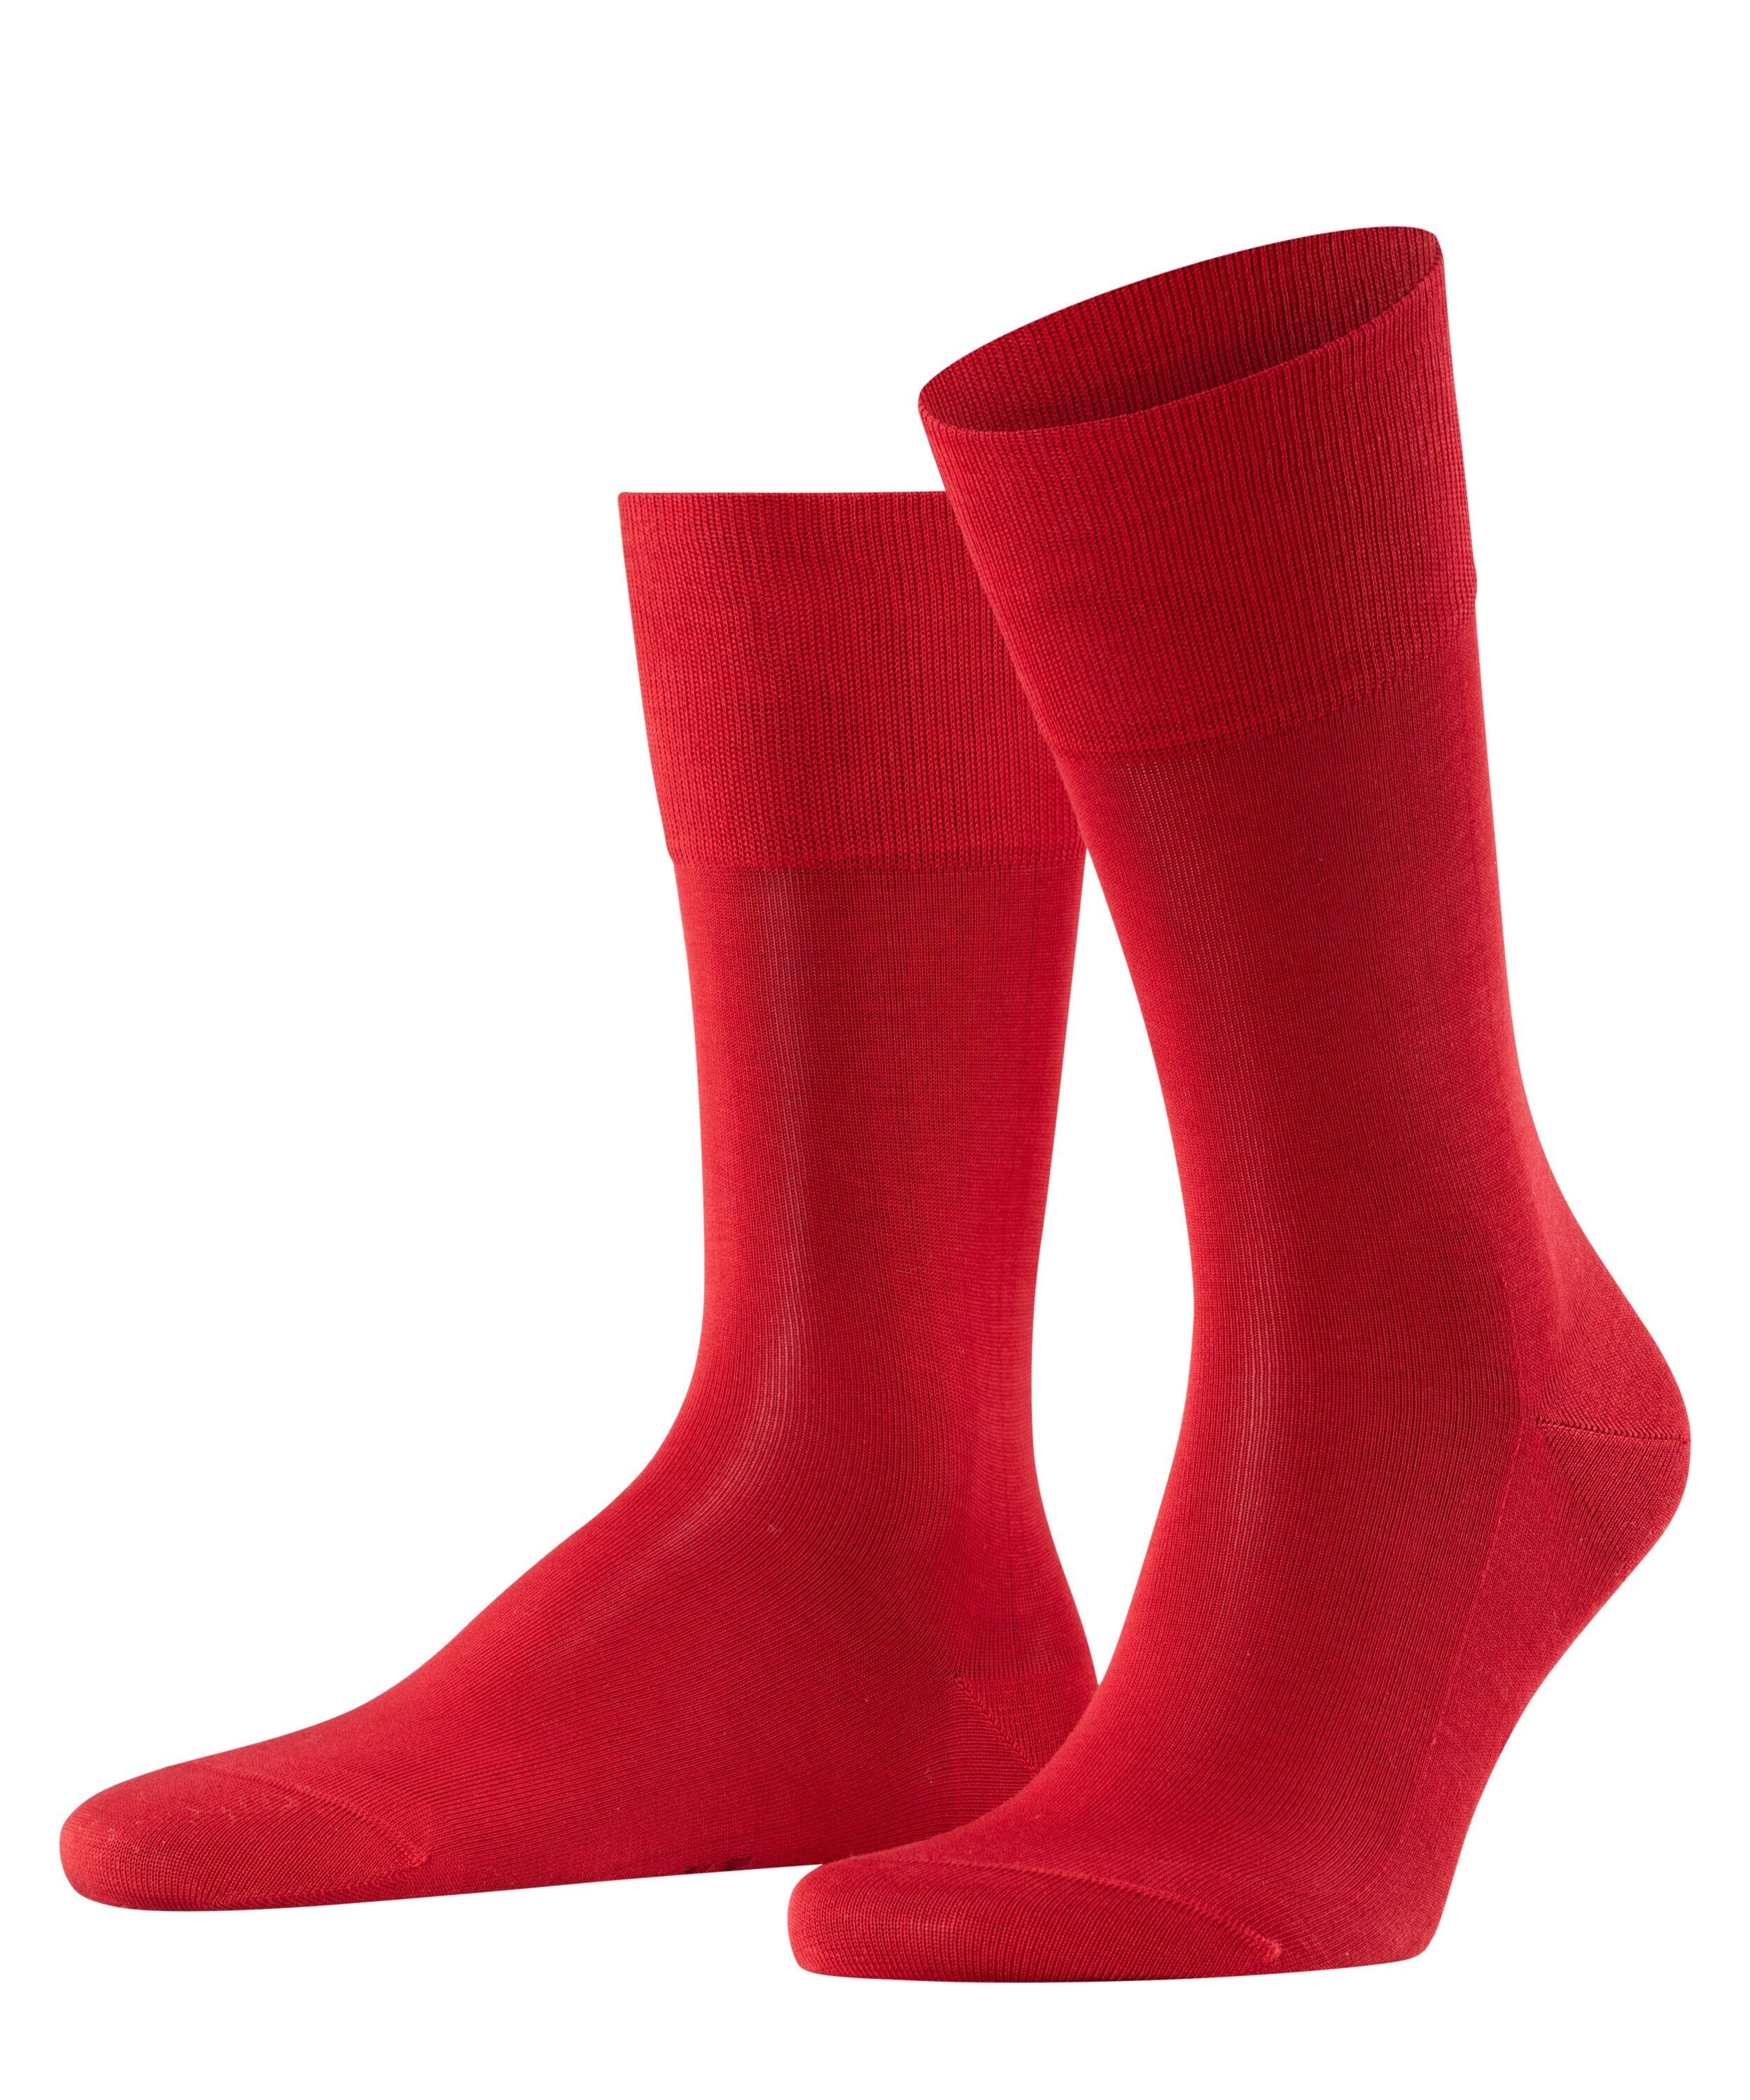 [Vertrauen zuerst, Qualität zuerst] FALKE Socken Tiago (1-Paar) scarlet (8228)